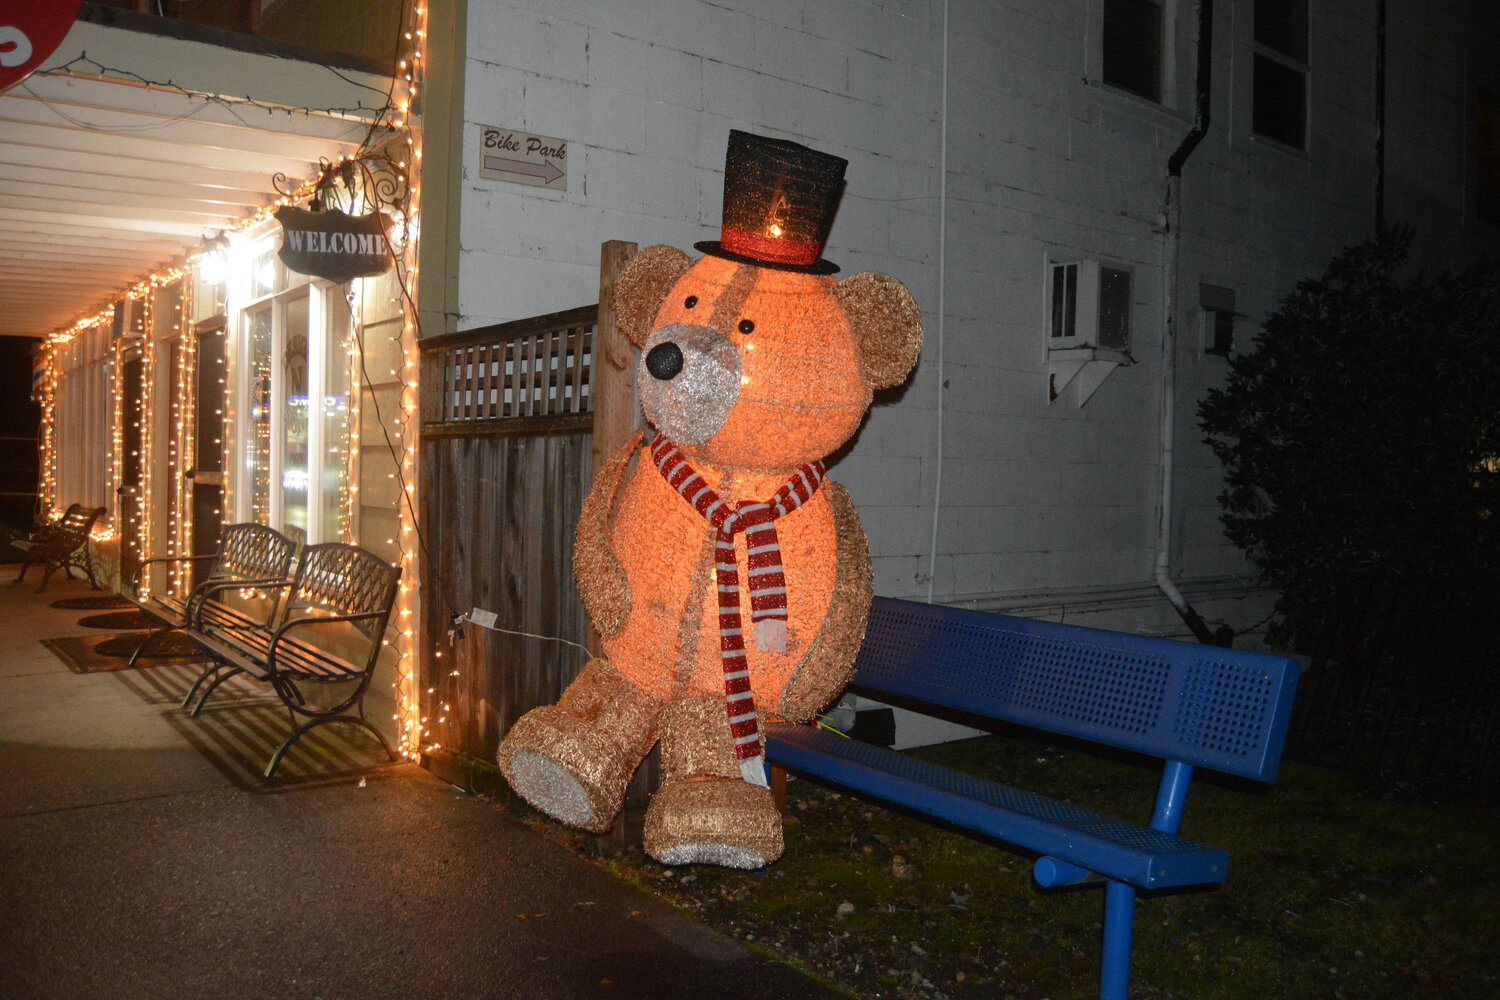 An illuminated teddy bear sits on a bench near Rainier's Holiday Park on Dec. 2.